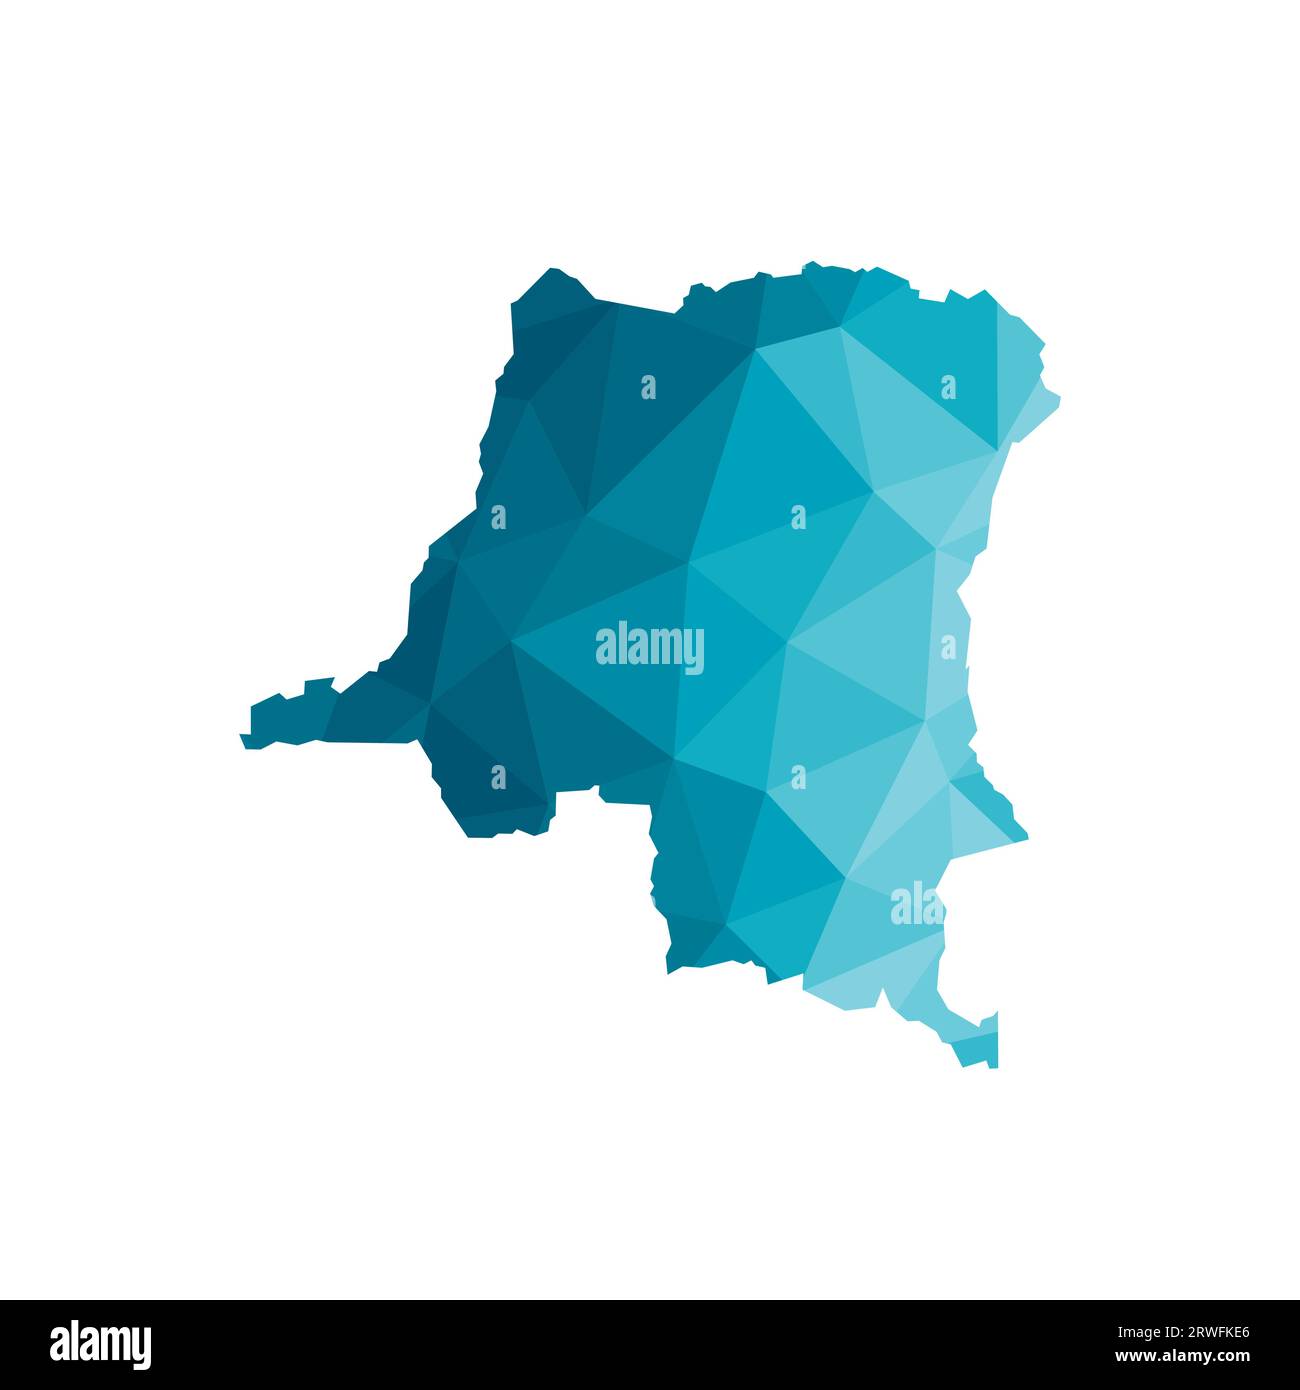 Vektor isolierte Illustration Symbol mit vereinfachter blauer Silhouette der Demokratischen Republik Kongo Karte. Polygonaler geometrischer Stil, dreieckige Form Stock Vektor